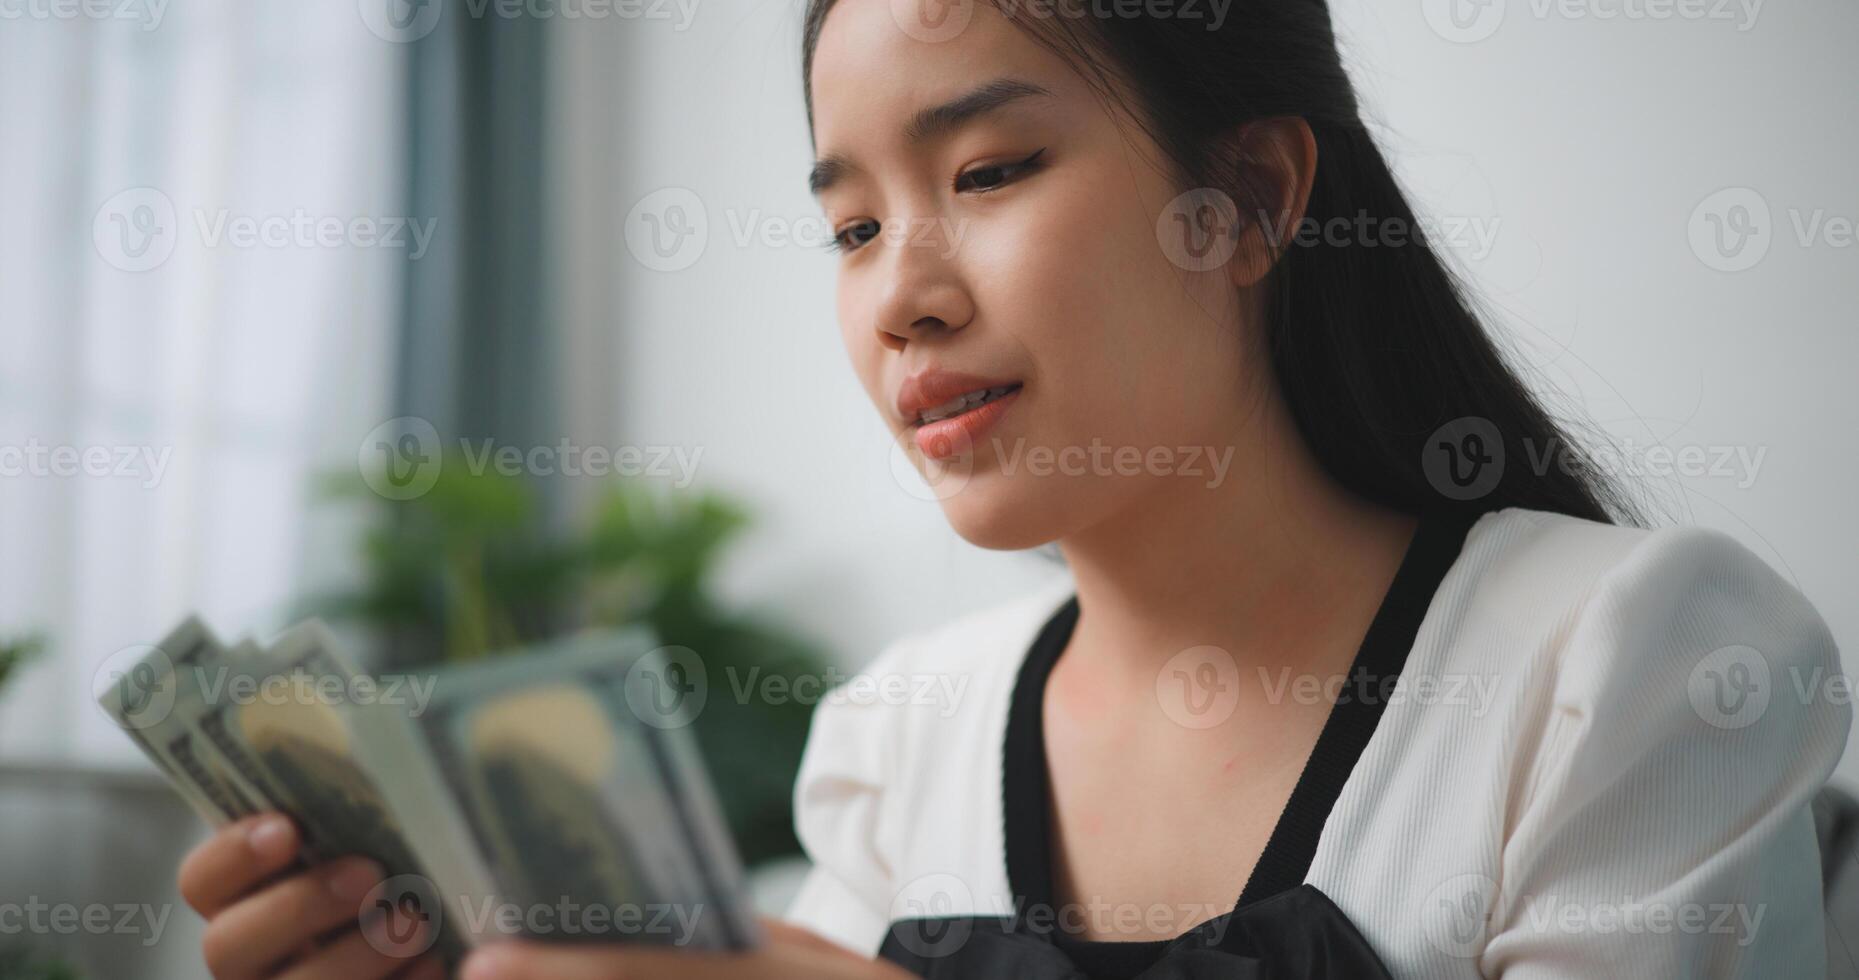 ritratto di contento giovane asiatico donna conta denaro contante dollaro fatture mentre seduta nel vivente camera a a casa, contando pila denaro contante i soldi dollaro foto